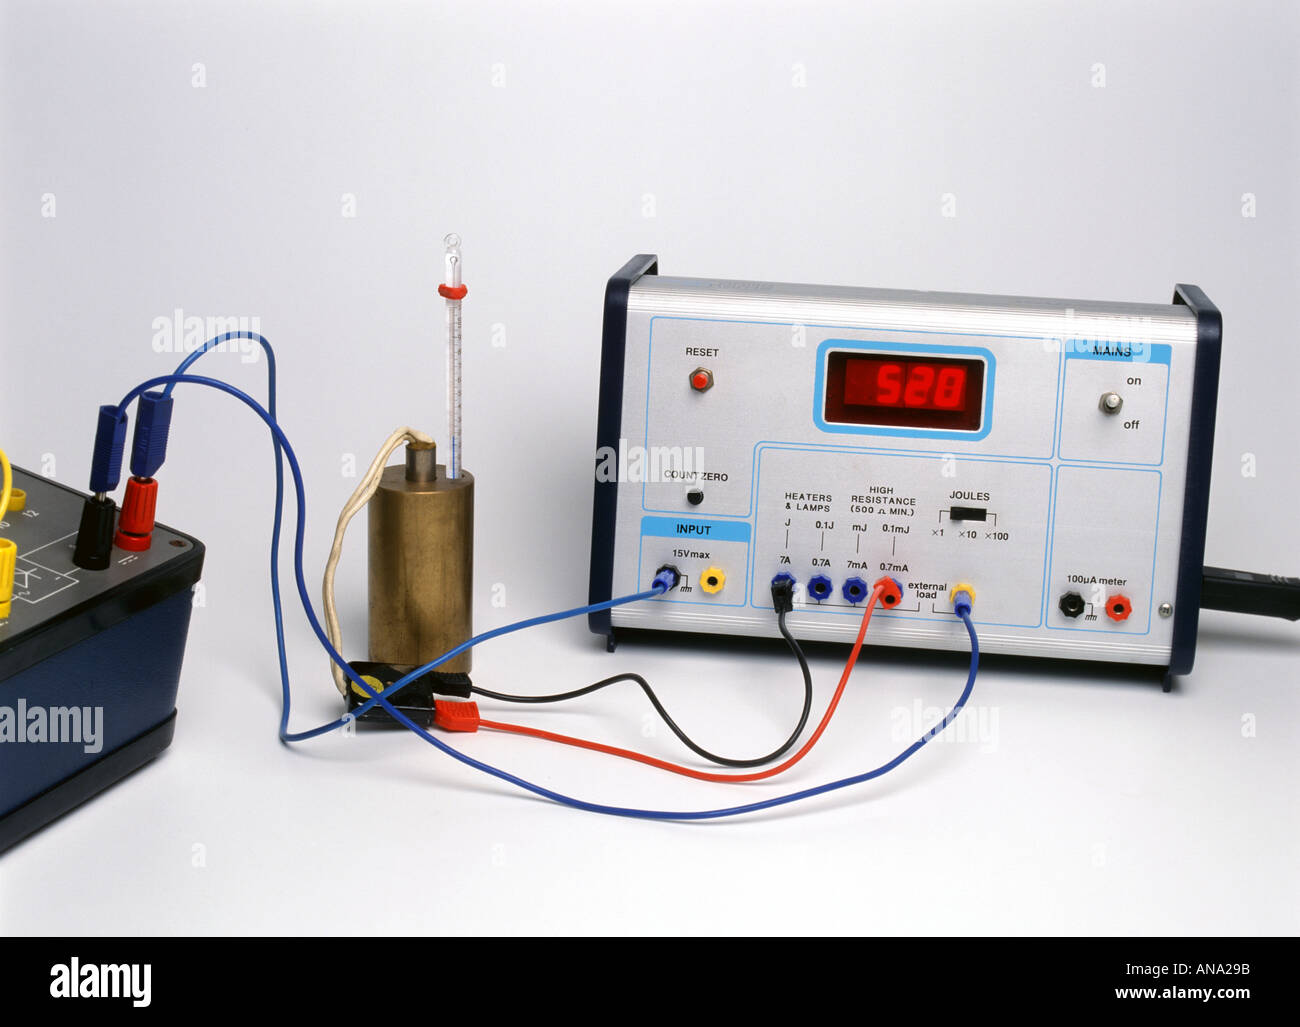 Joulemeter la misurazione dell'energia alimentata ad un blocco di rame mentre un termometro è utilizzato per monitorare la salita in temperatura Foto Stock